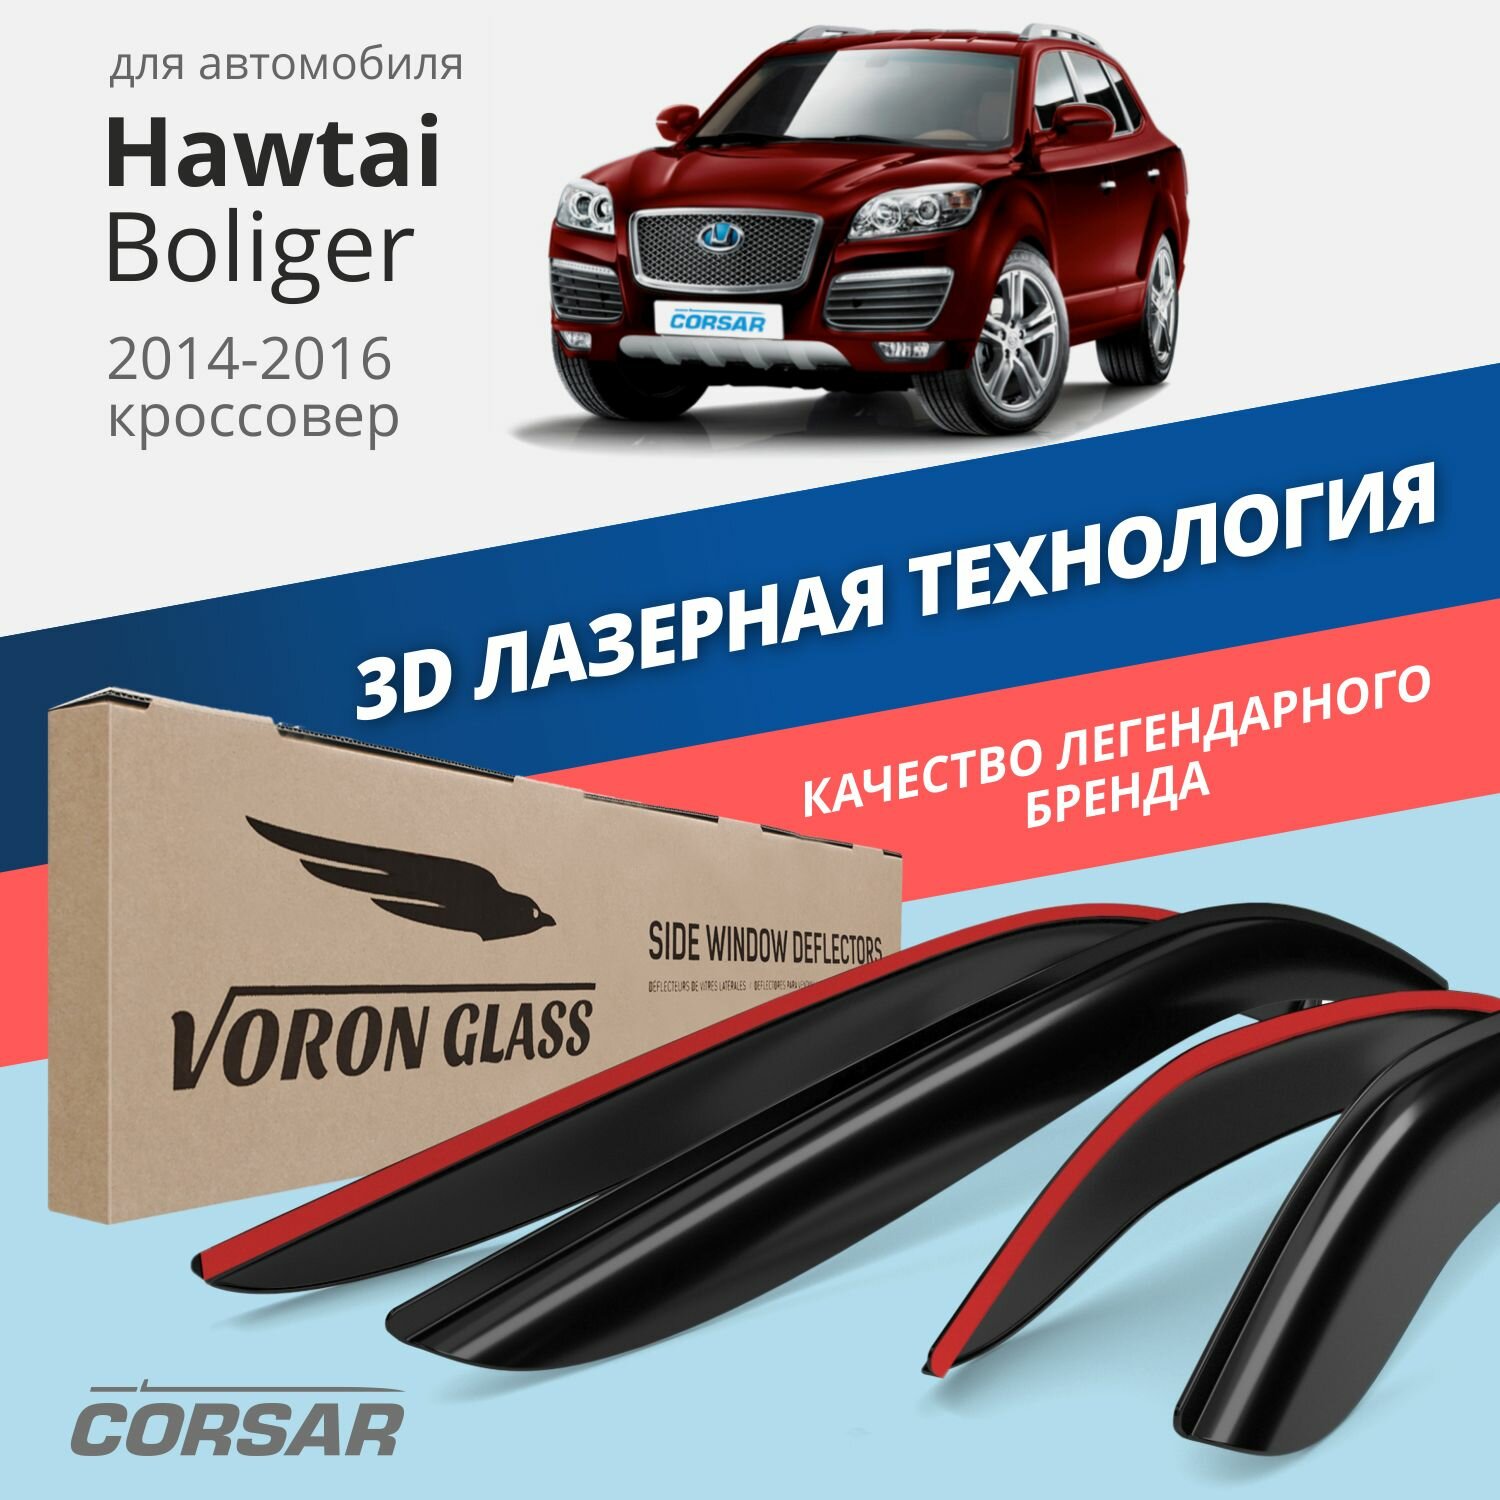 Дефлекторы окон Voron Glass серия Corsar для Hawtai Boliger 2014-2016 накладные 4 шт.